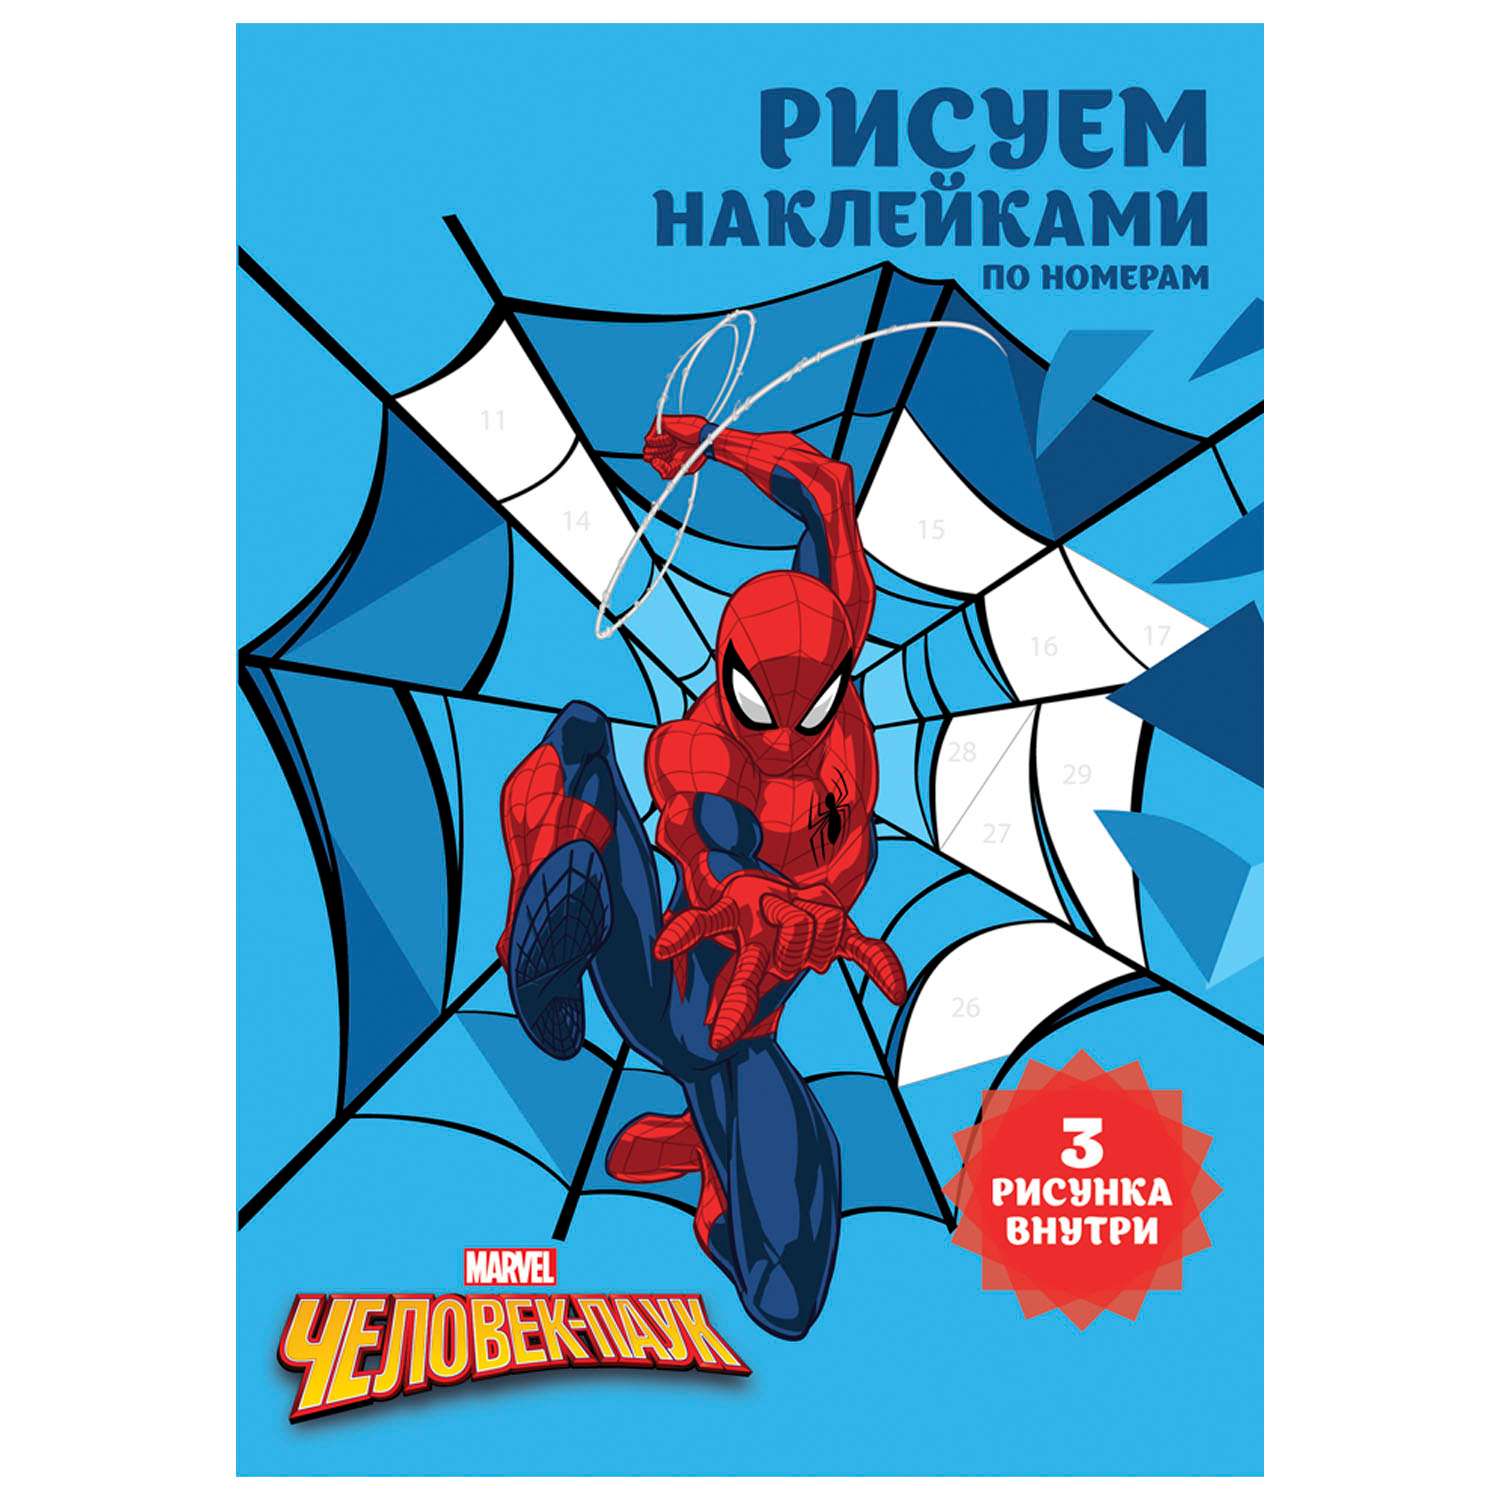 Набор для творчества Disney Рисуем наклейками по номерам Человек-паук 64548 - фото 1